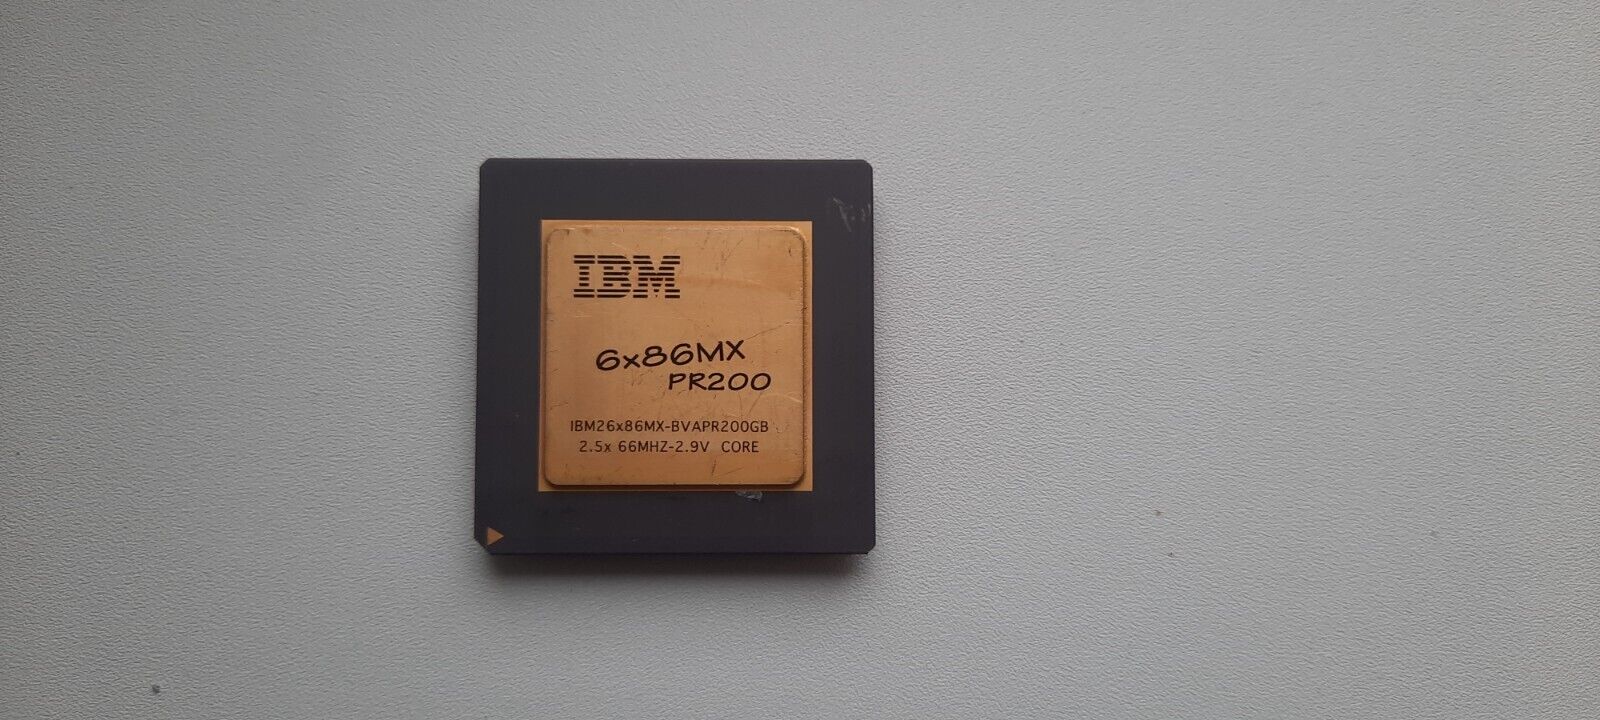 IBM 6x86MX PR200 6x86MX-BVAPR200GB 6x86 vintage CPU GOLD